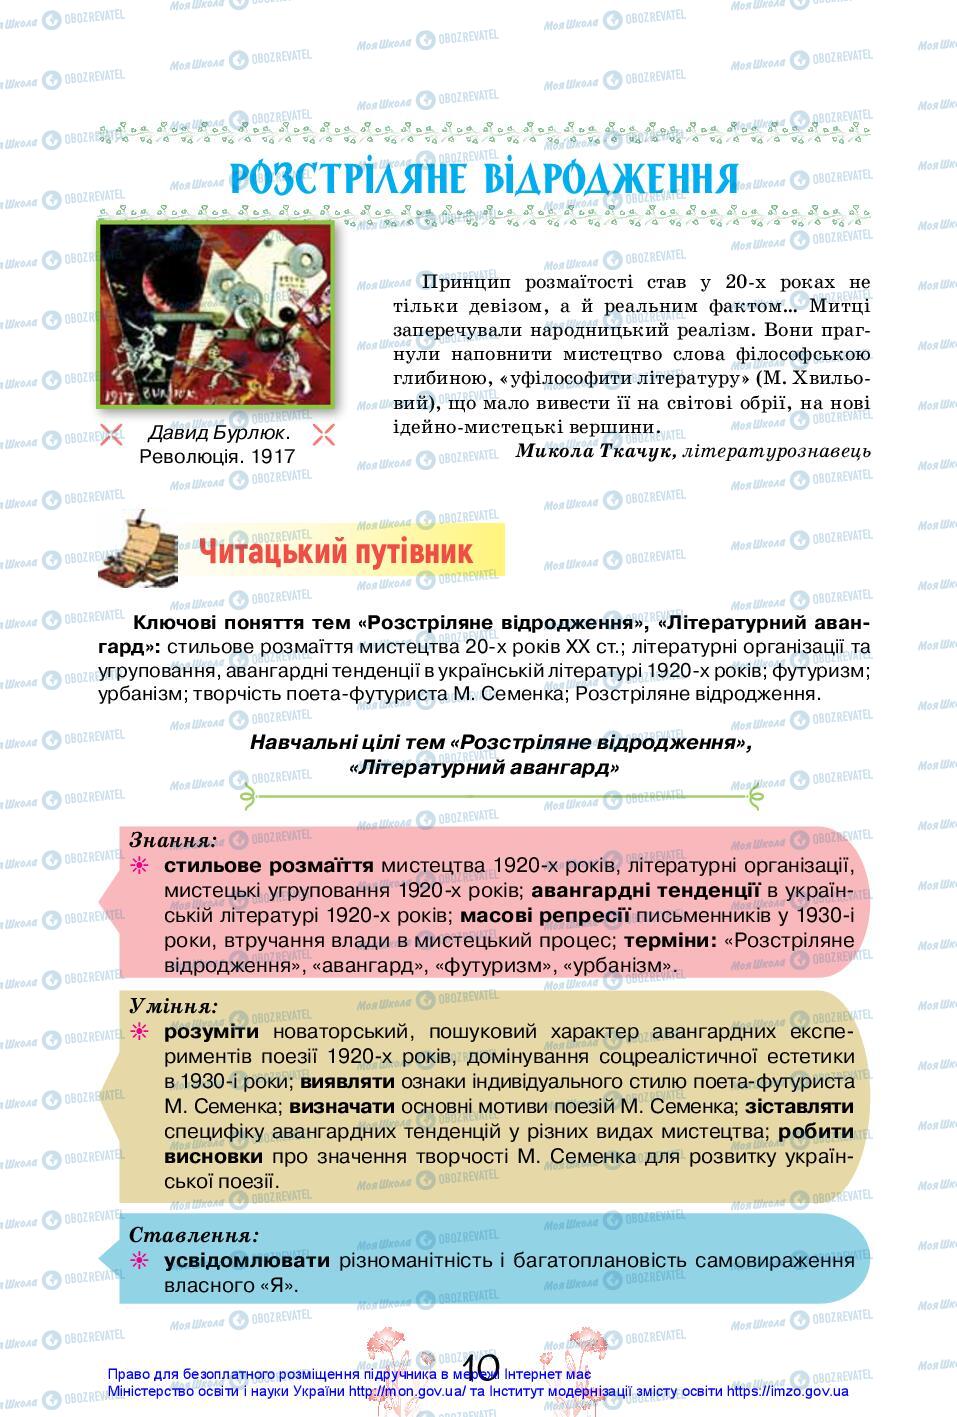 Підручники Українська література 11 клас сторінка 10